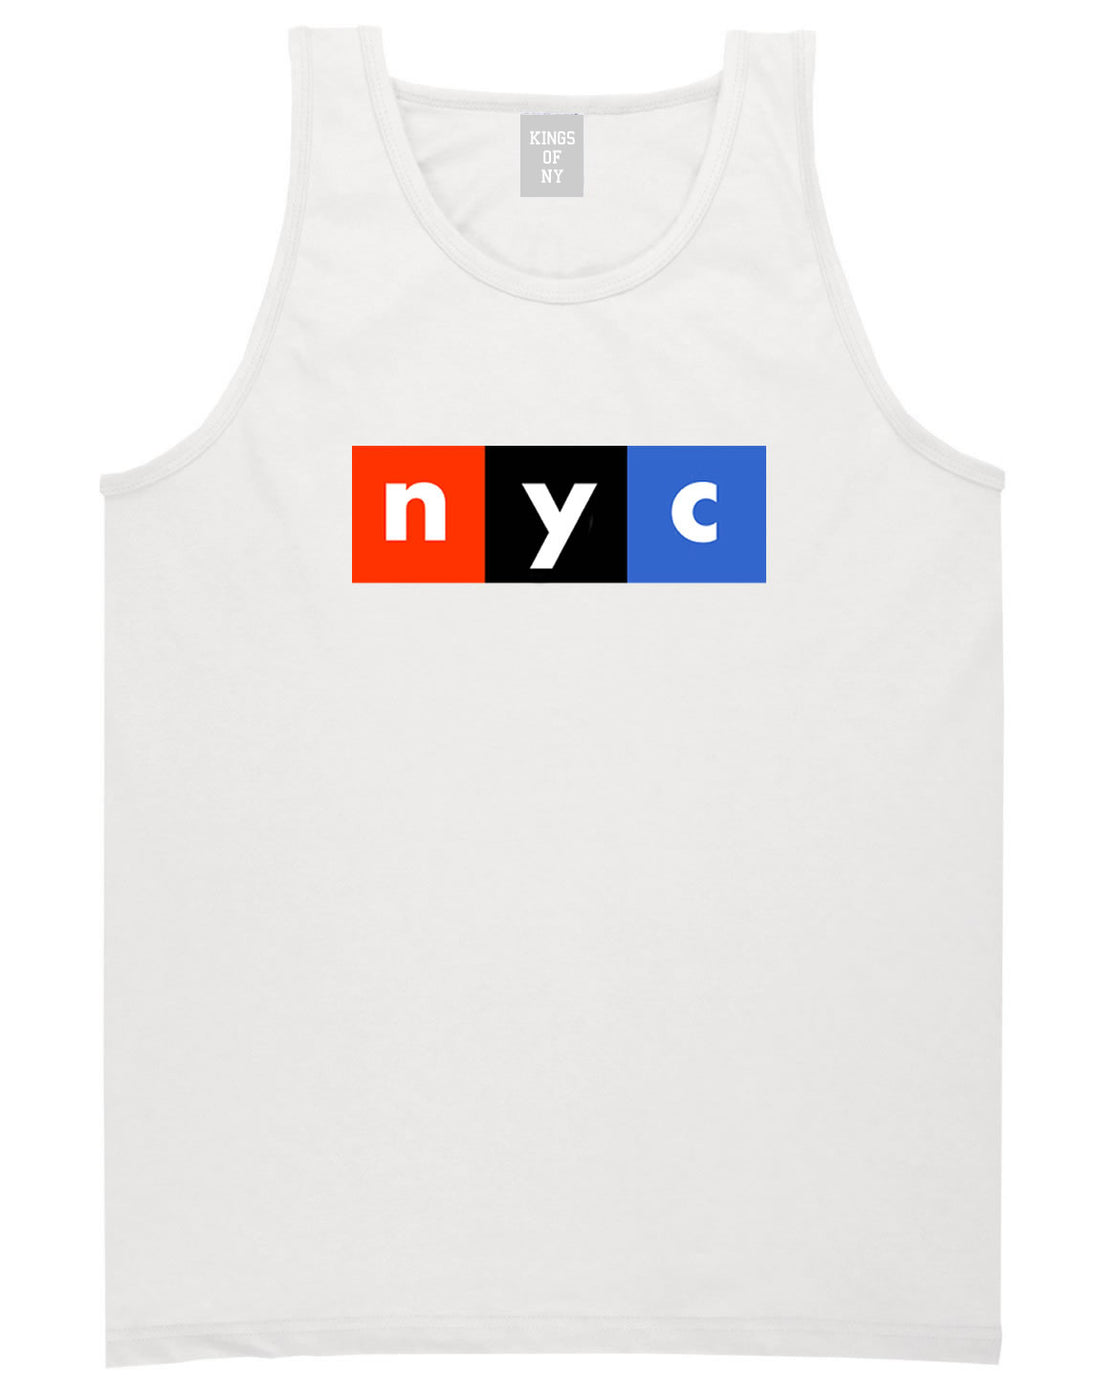 NYC Logo Tank Top By Kings Of NY